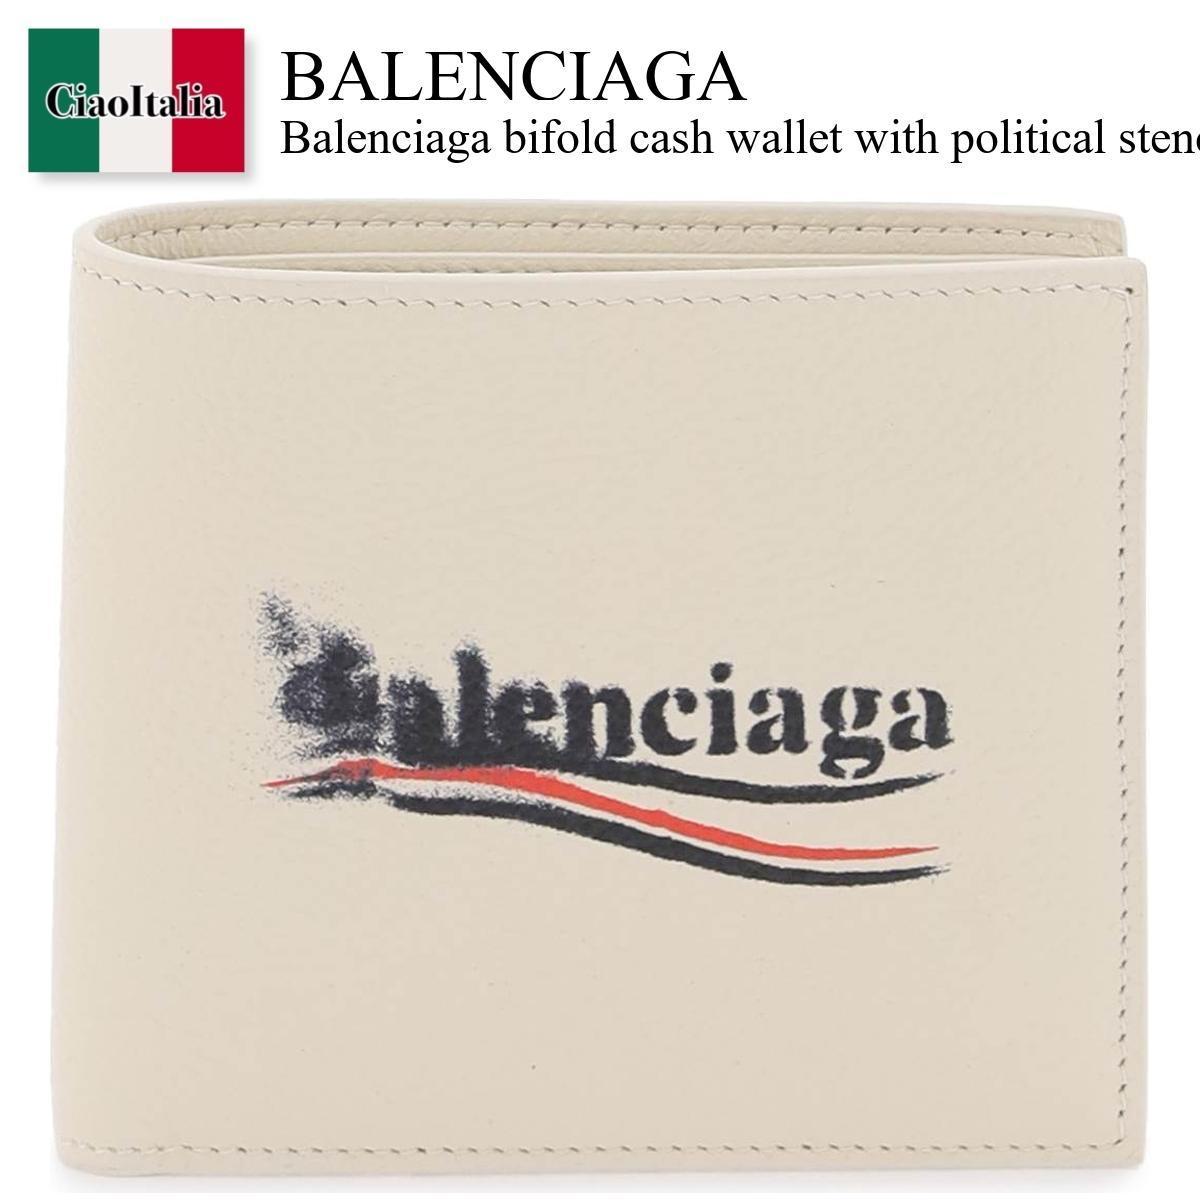 楽天Ciao Italiaバレンシアガ / Balenciaga Bifold Cash Wallet With Political Stencil Logo / 594549 2AA3B / 594549 2AA3B 9224 / 5945492AA3B9224 / 5945492AA3B / 折りたたみ財布 / 「正規品補償」「VIP価格販売」「お買い物サポート」